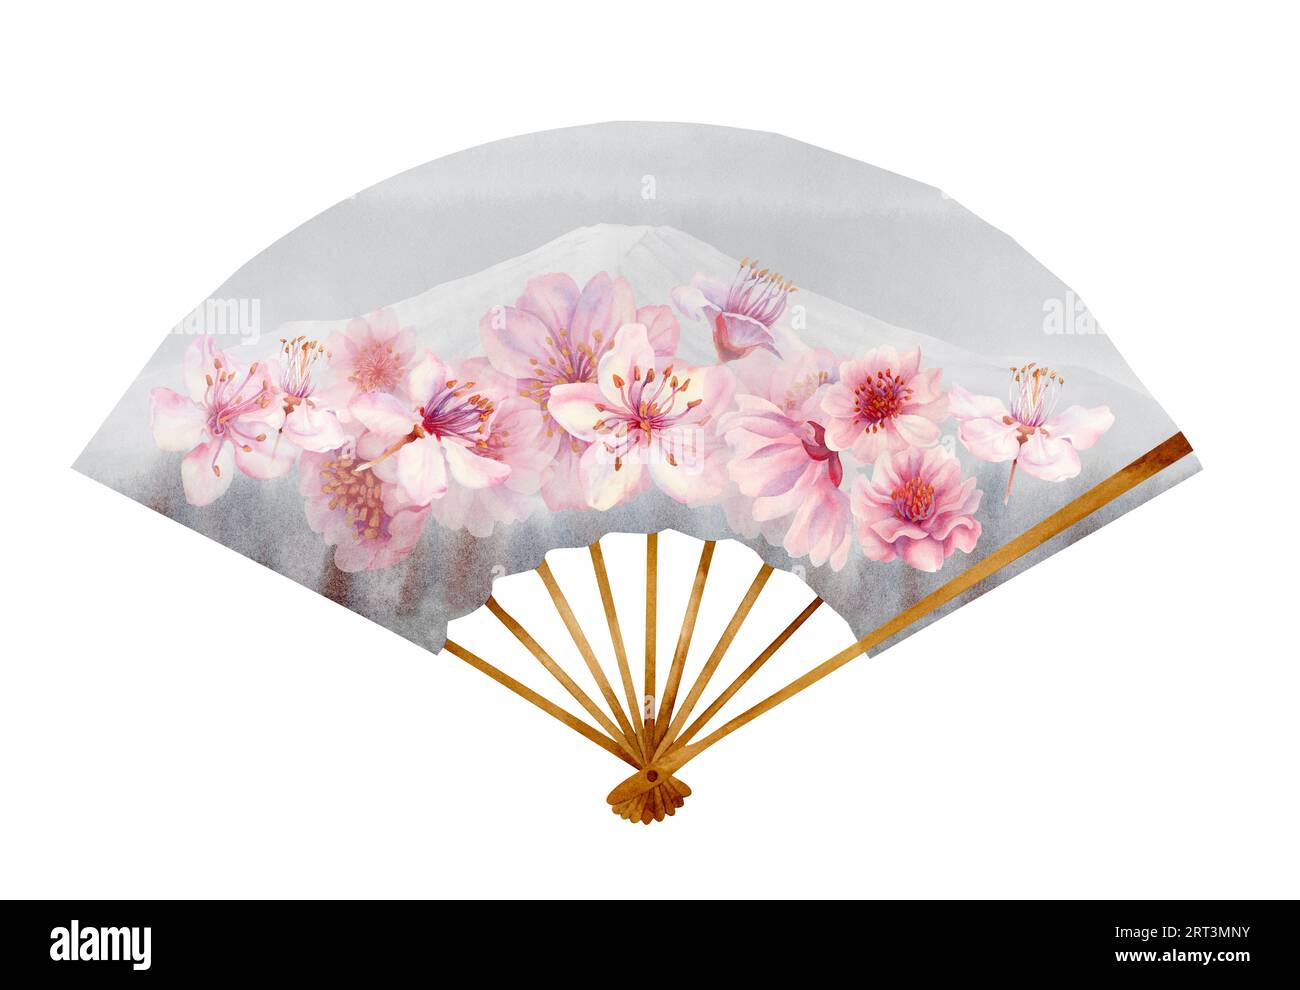 Illustrazione ad acquerello di un ventilatore di carta aperto grigio con fiori di ciliegio e Monte Fuji. Elemento isolato su sfondo bianco Foto Stock